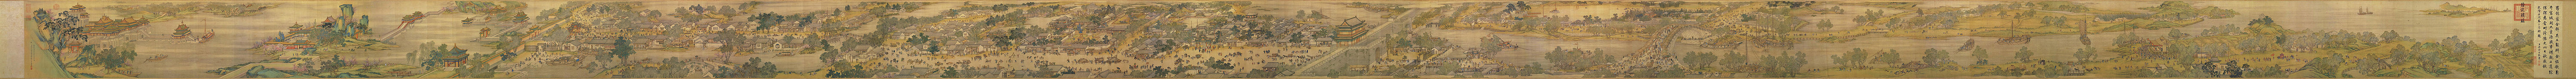 Vista panorámica de El festival Qingming junto al río, réplica del siglo XVIII basada en el rollo original del siglo XII.